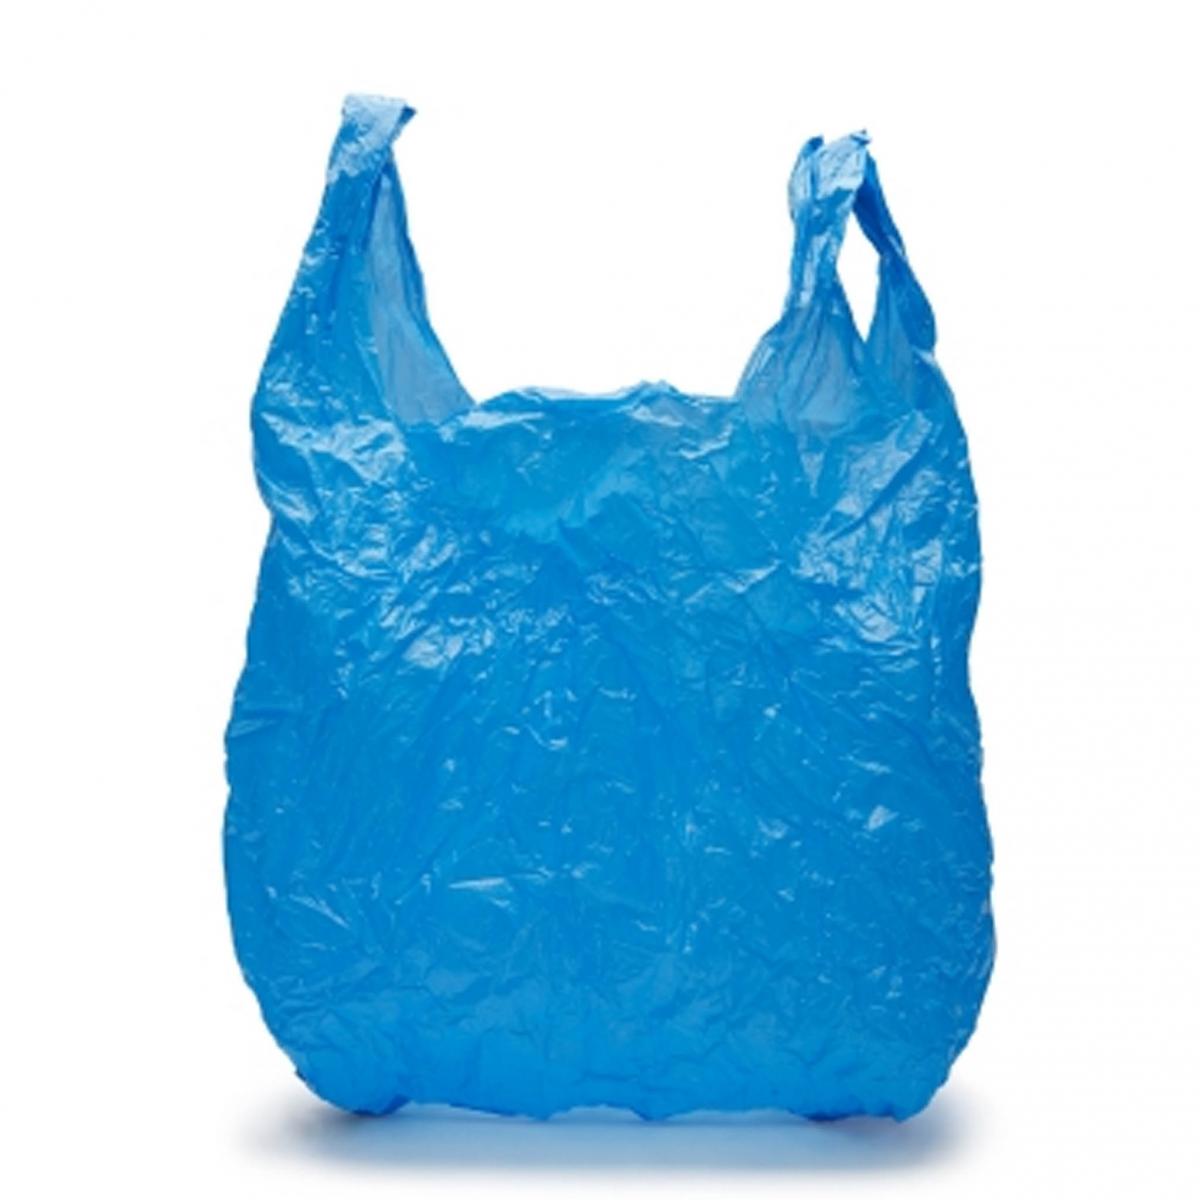 Bolsa de plástico para objetos